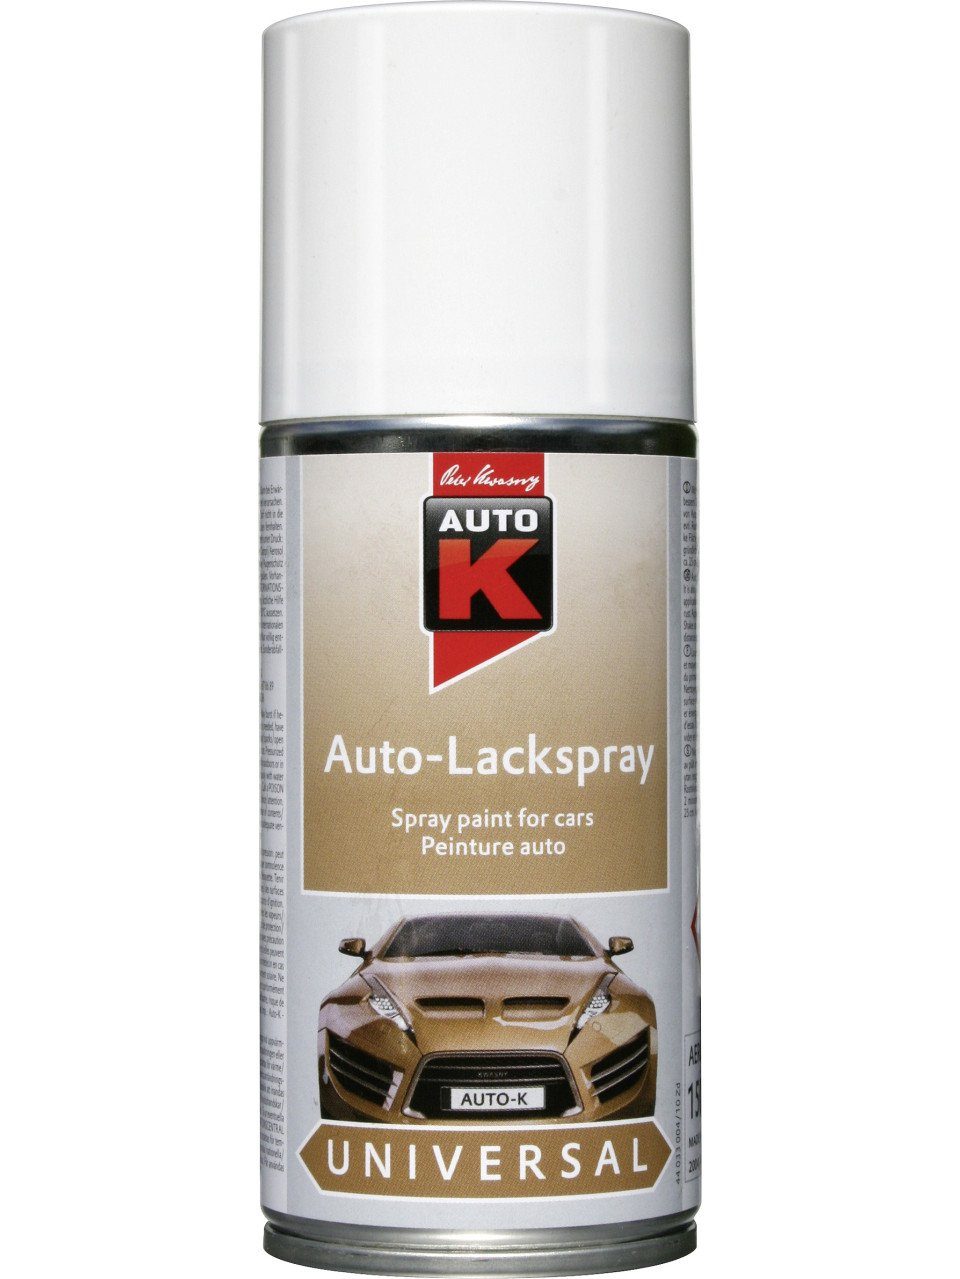 Auto-K Sprühlack Auto-K weiß glanz 150ml universal Lackspray